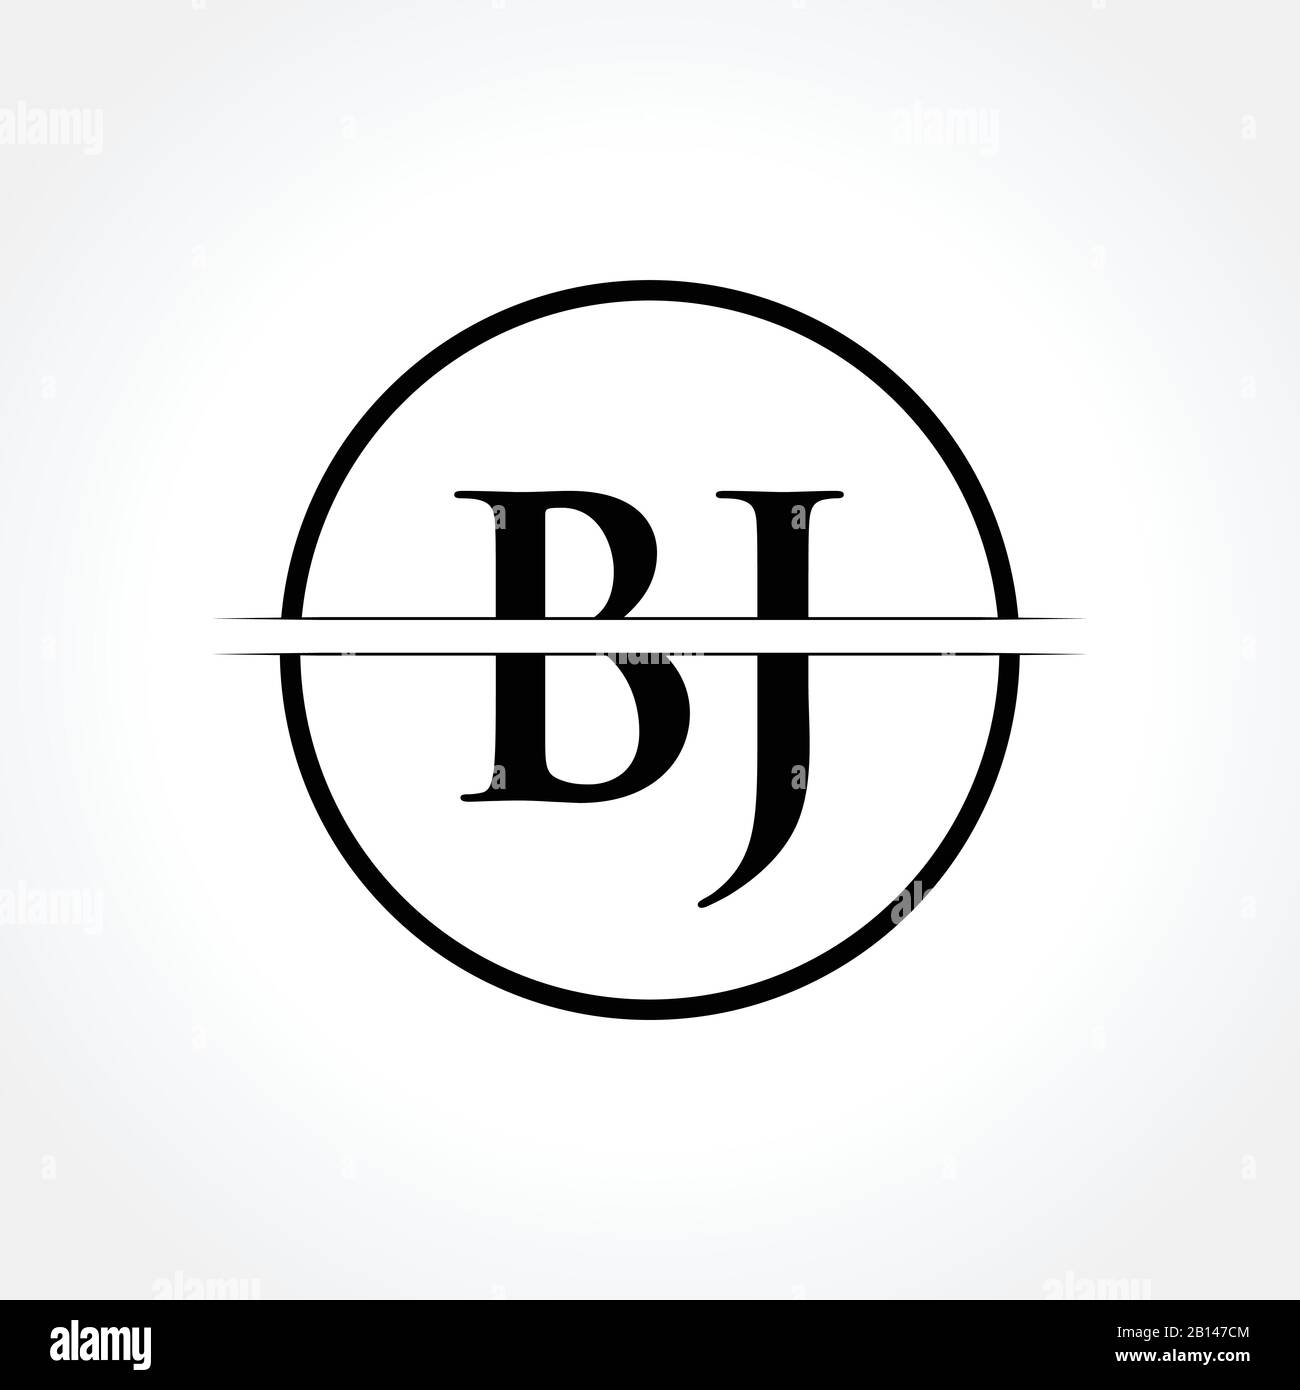 Alphabet Letters Bj Jb Logo Monogram Stock Vector (Royalty Free) 2324442769  | Shutterstock